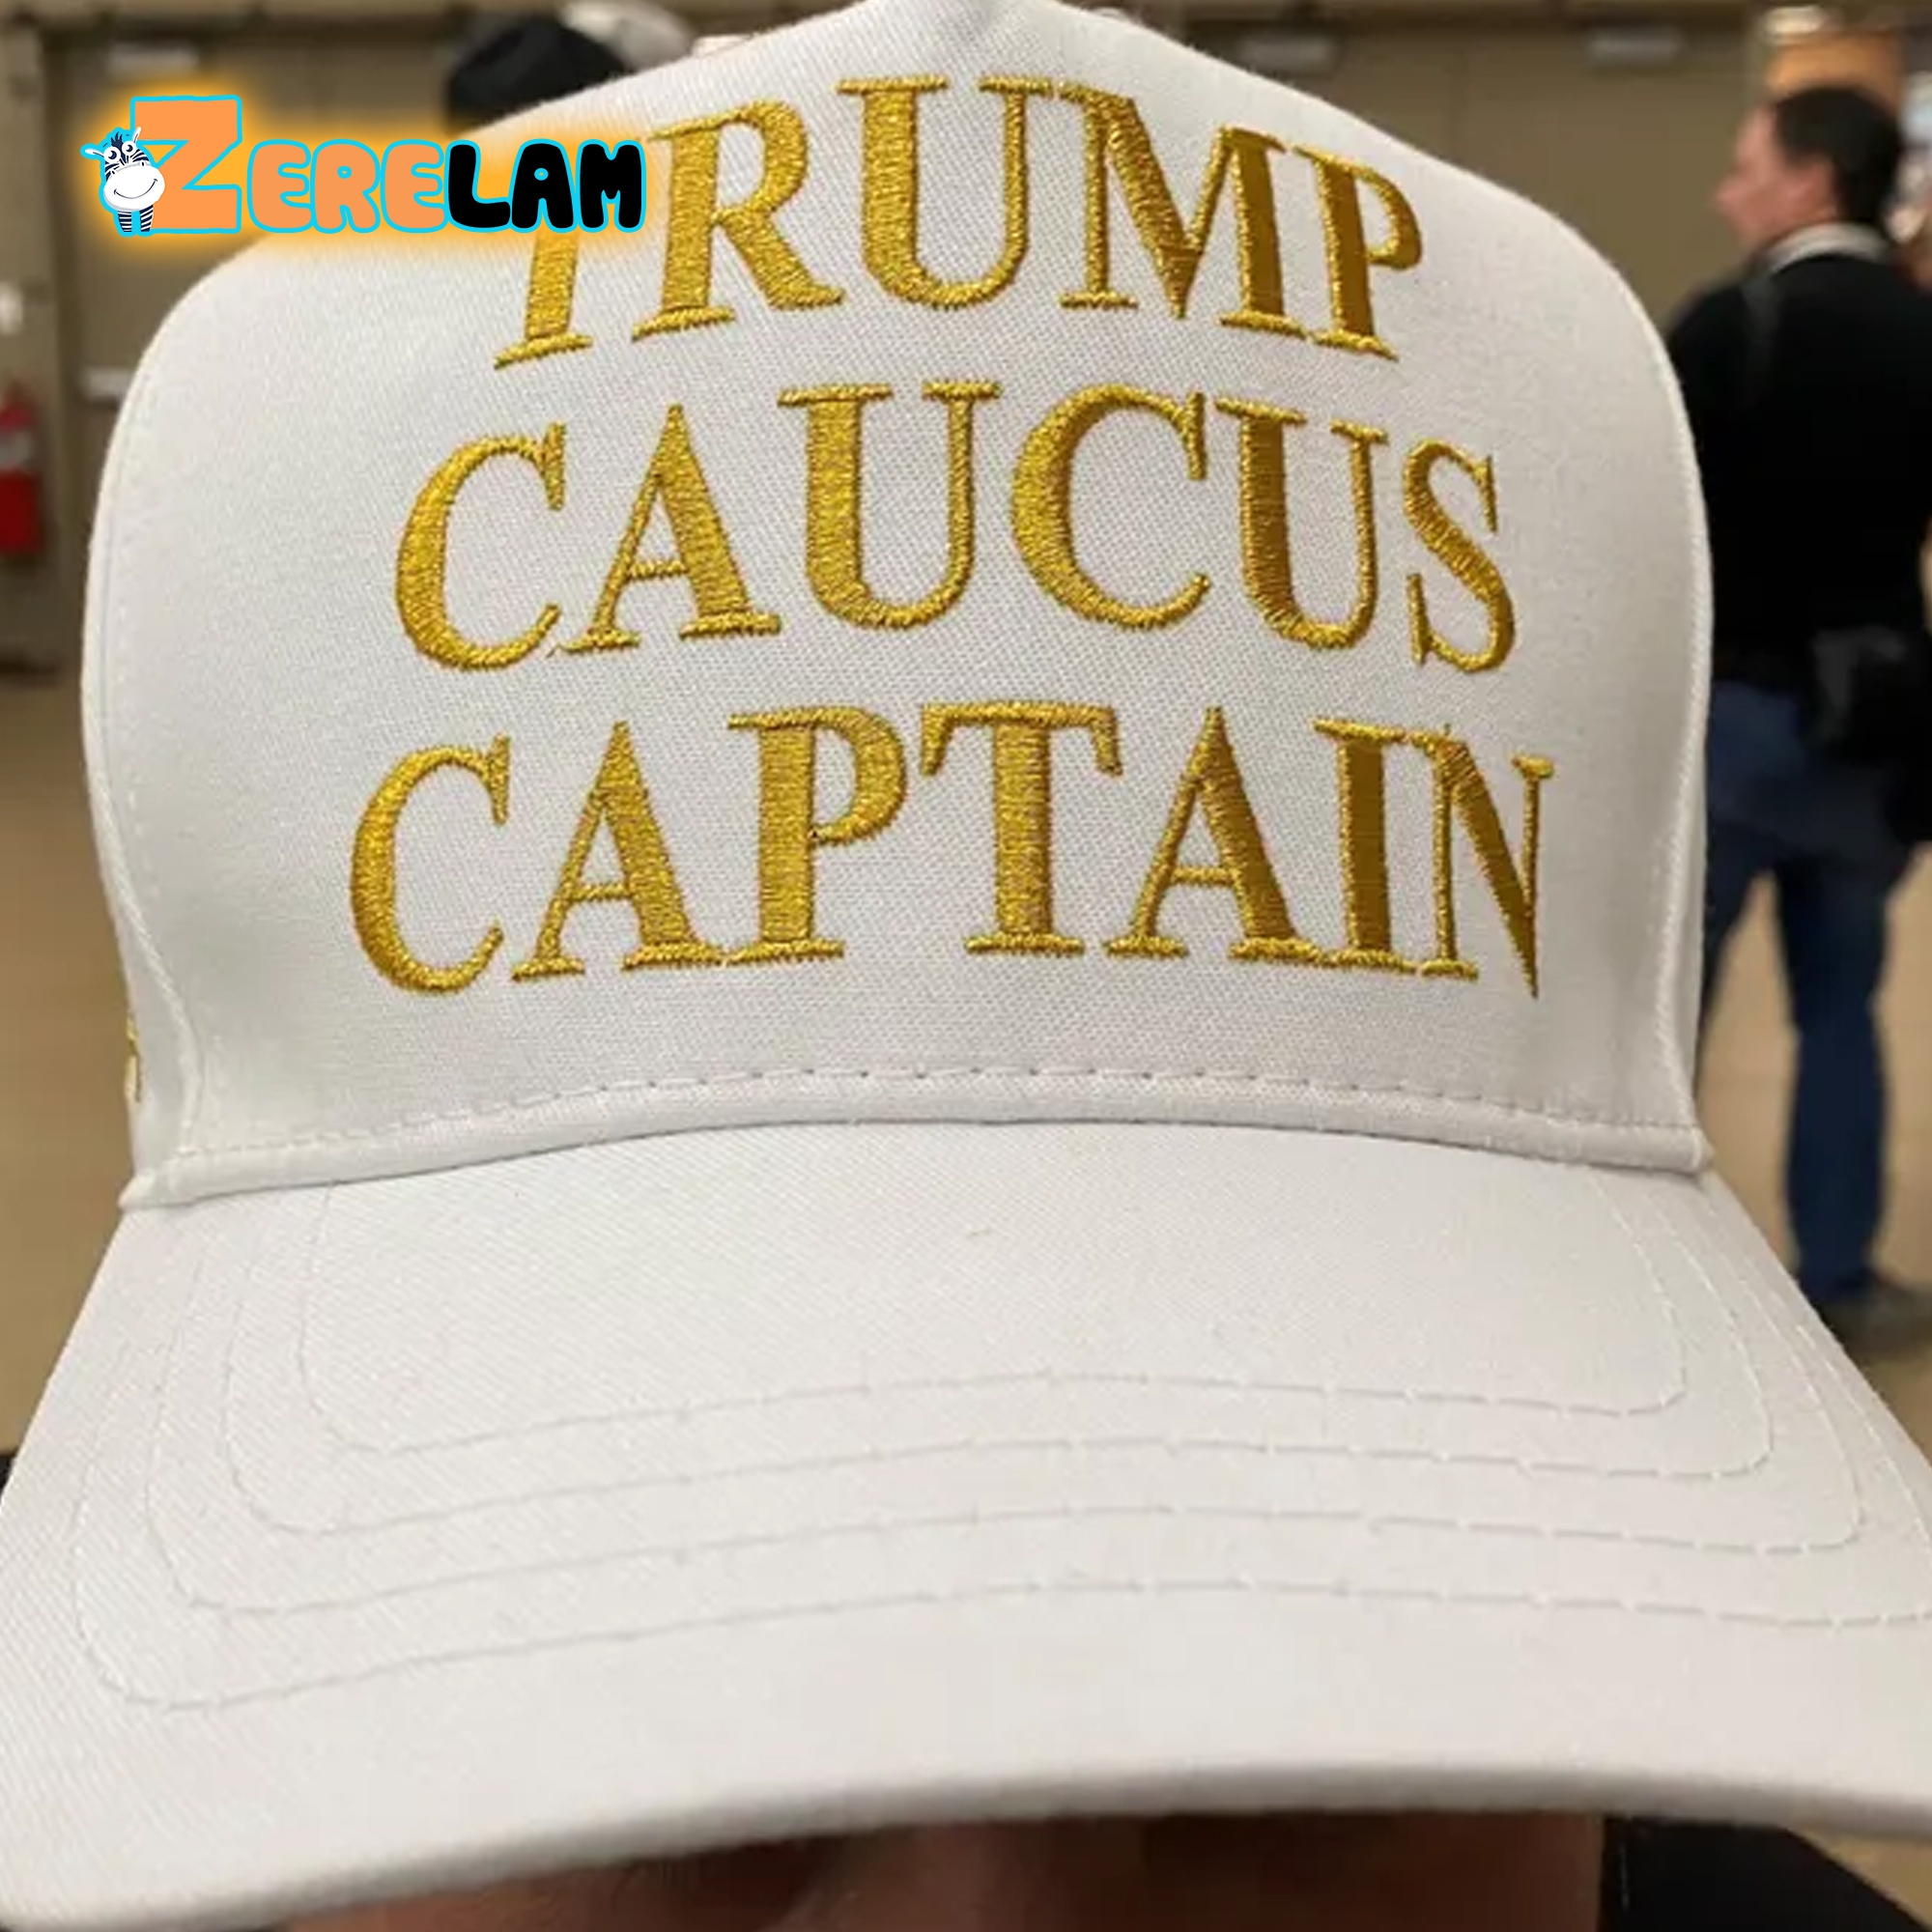 Trump Caucus Captain Hat - Zerelam